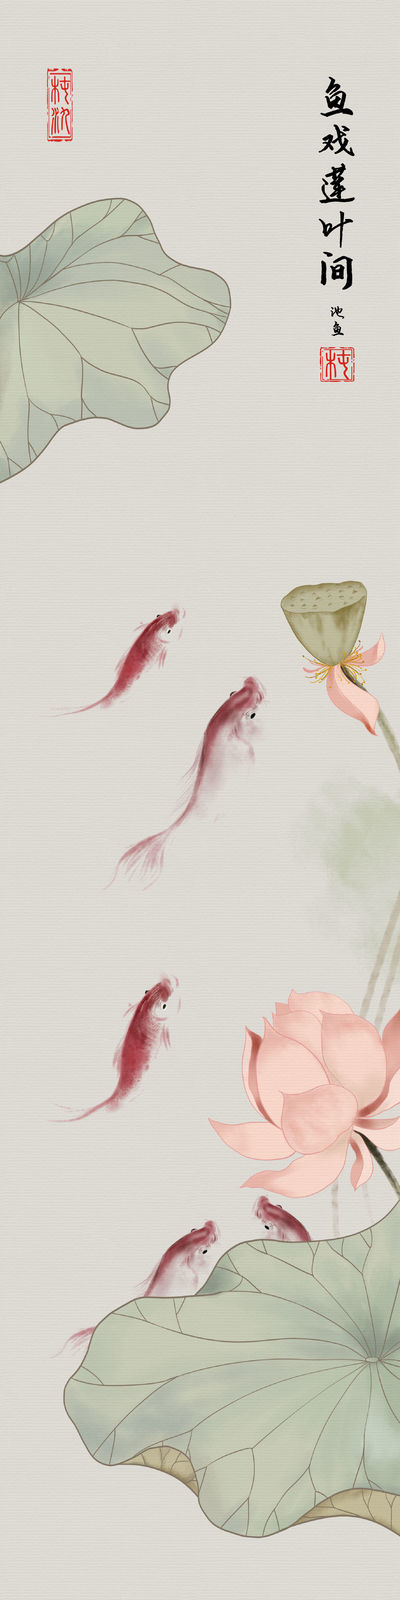 池鱼插画图片壁纸